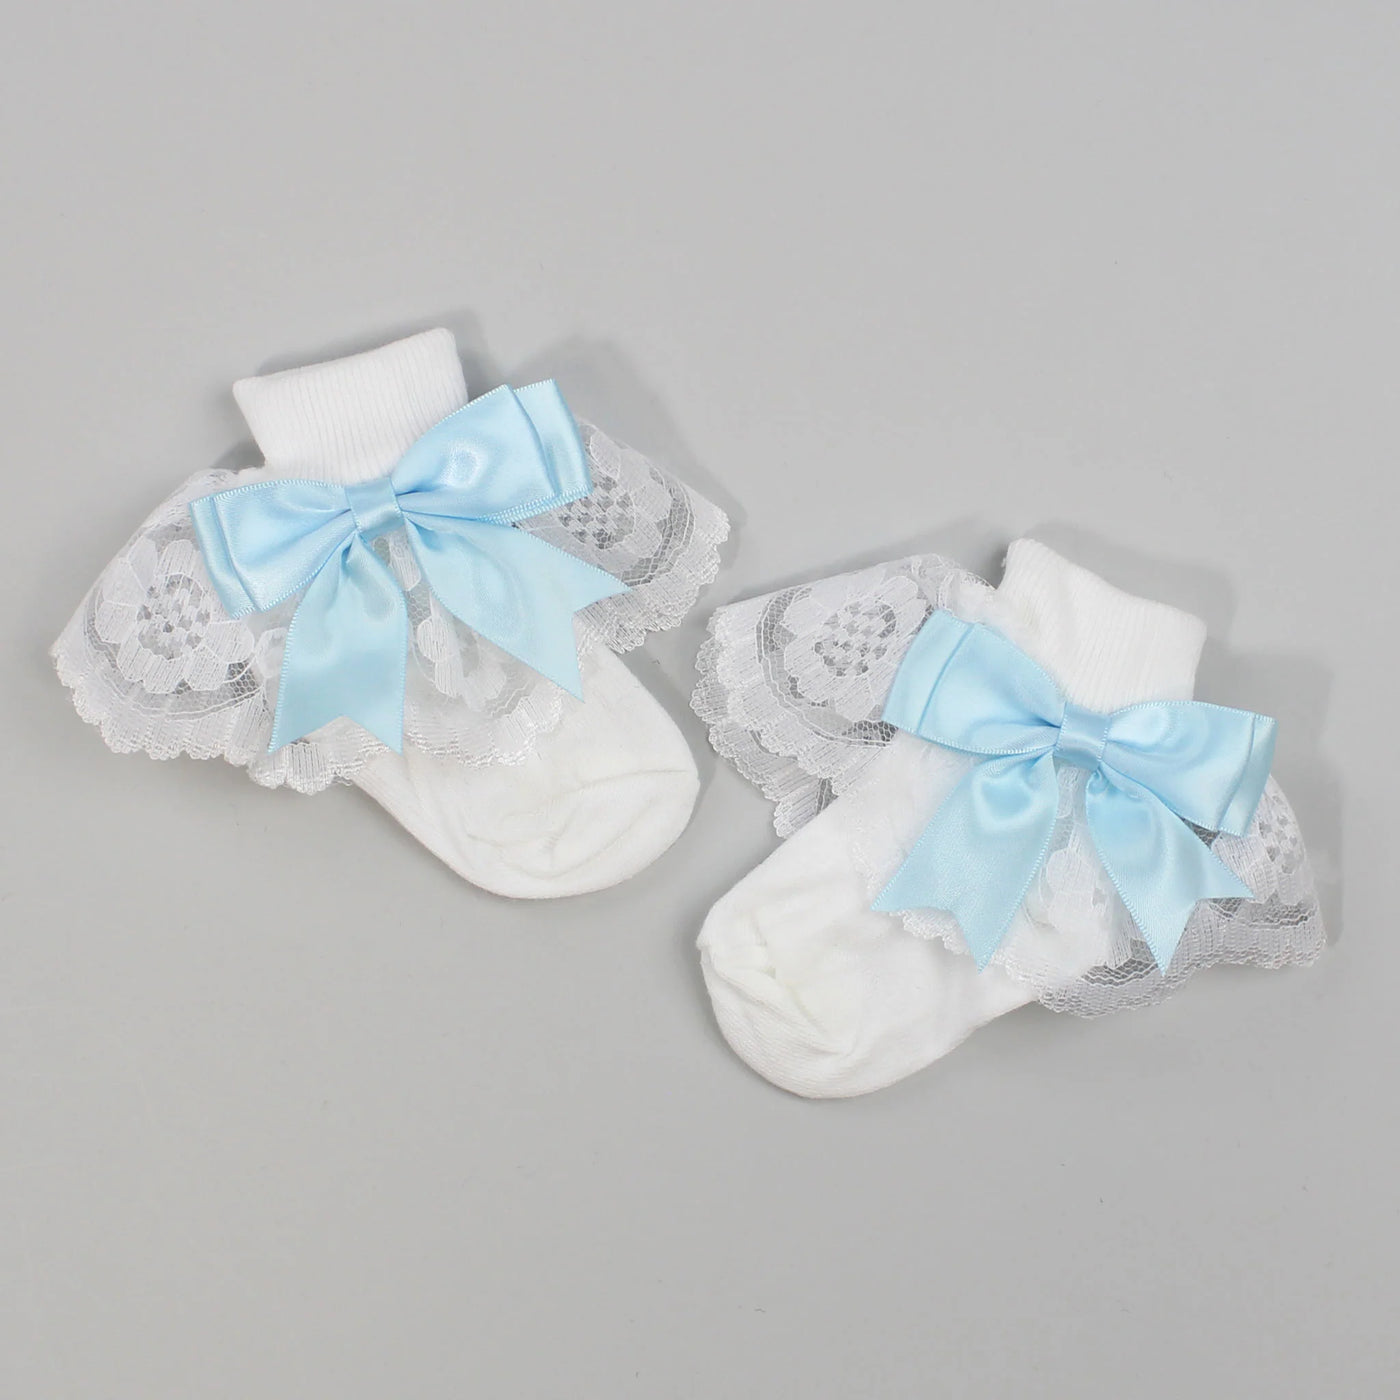 Kinder Baby Girls White & Satin Blue Bow Socks